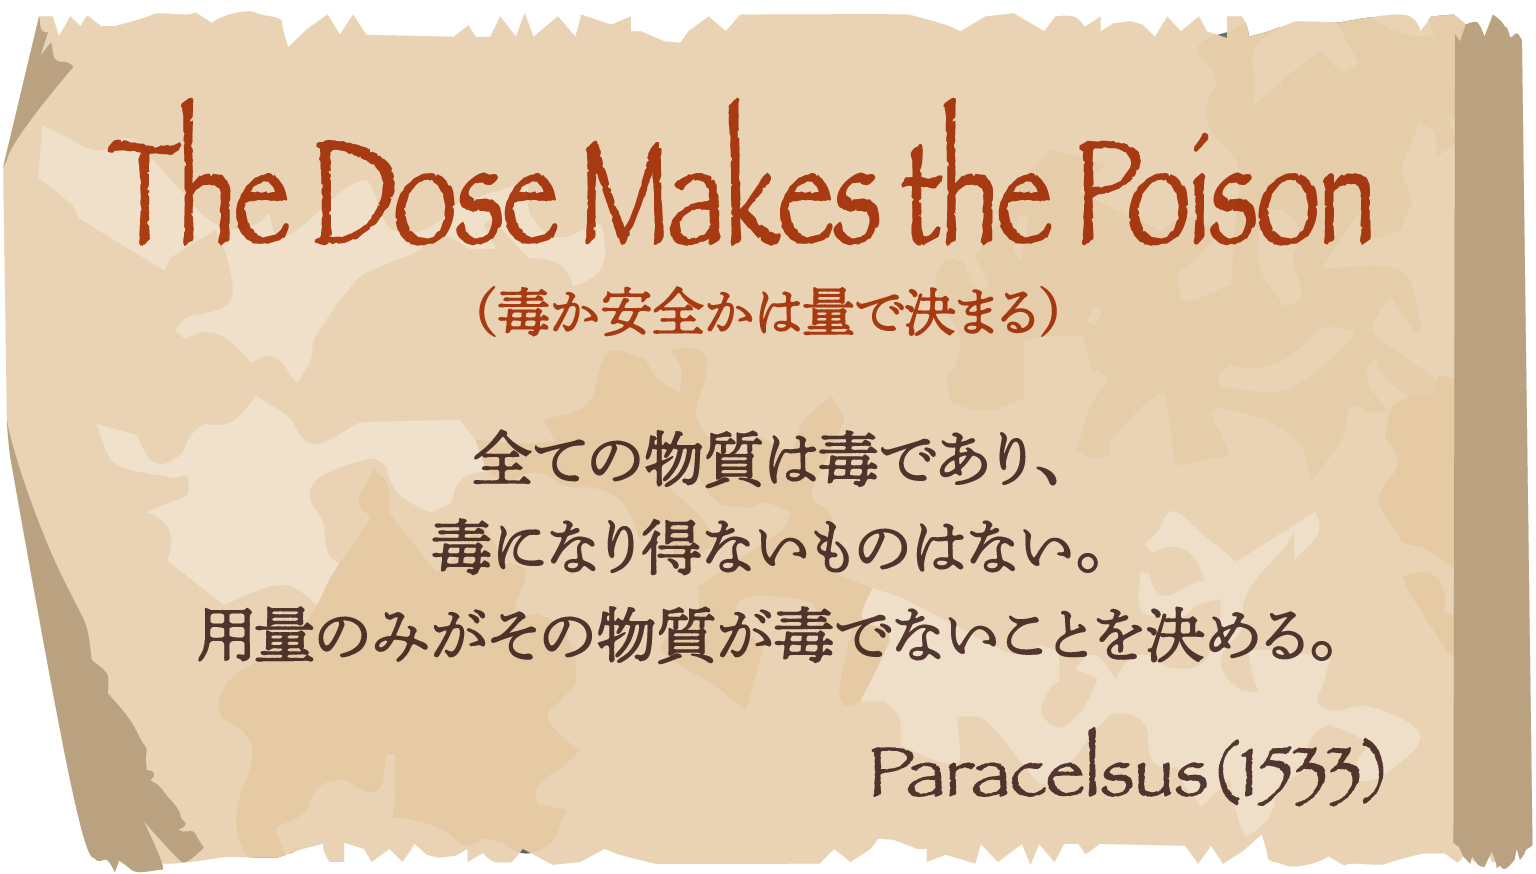 The Dose Makes the Poison （毒か安全かは量で決まる） 全ての物質は毒であり、毒になり得ないものはない。用量のみがその物質が毒でないことを決める。Paracelsus（1533）